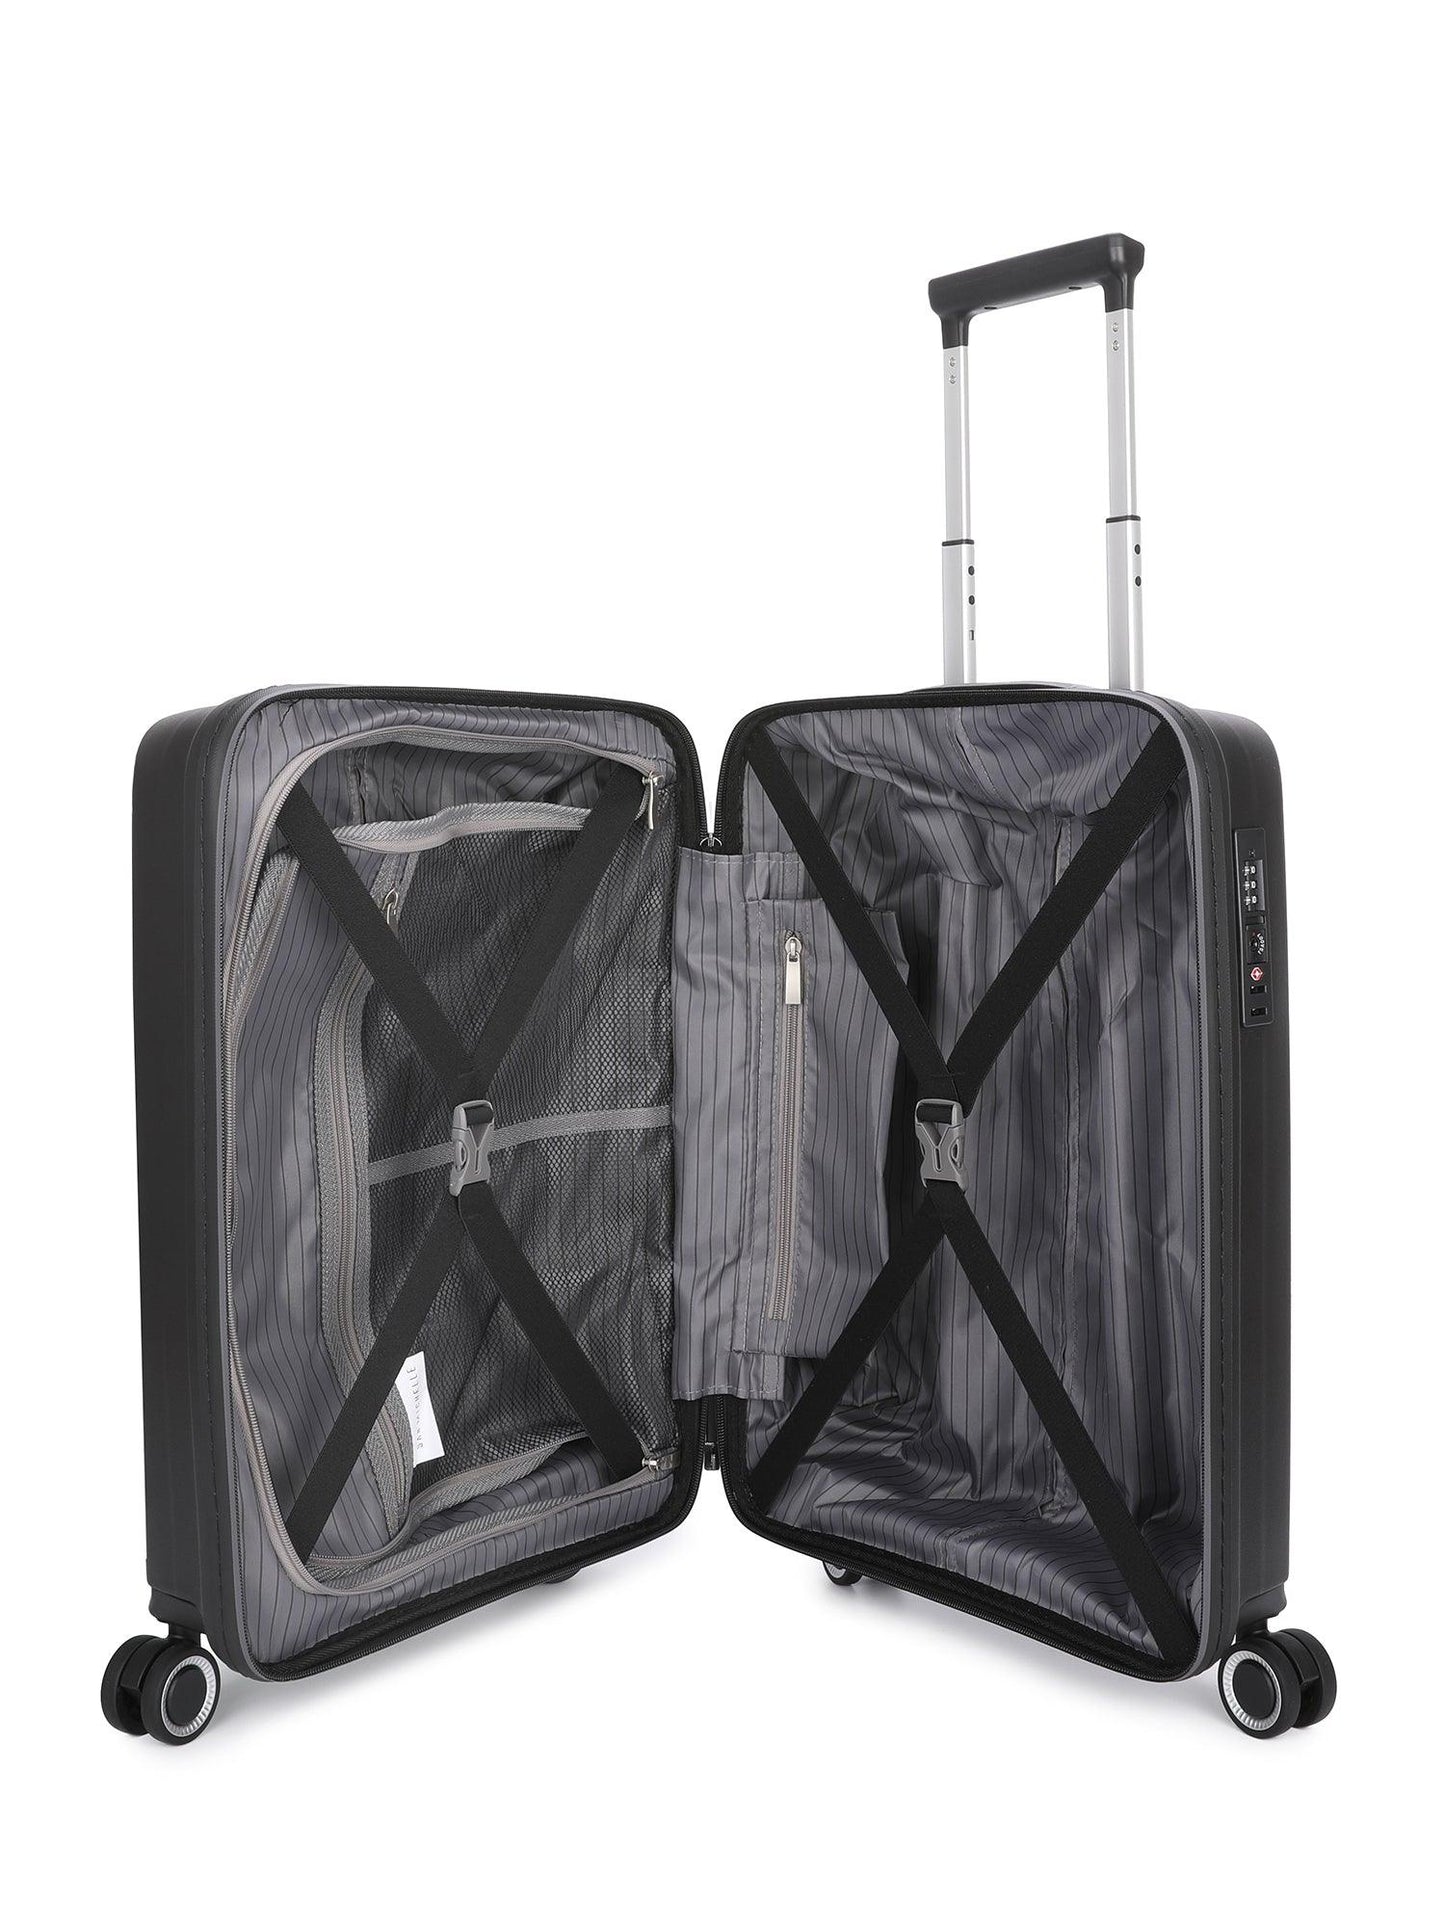 San Michelle Light Traveller 66cm Suitcase - Peach - San Michelle Bags suitcase nz